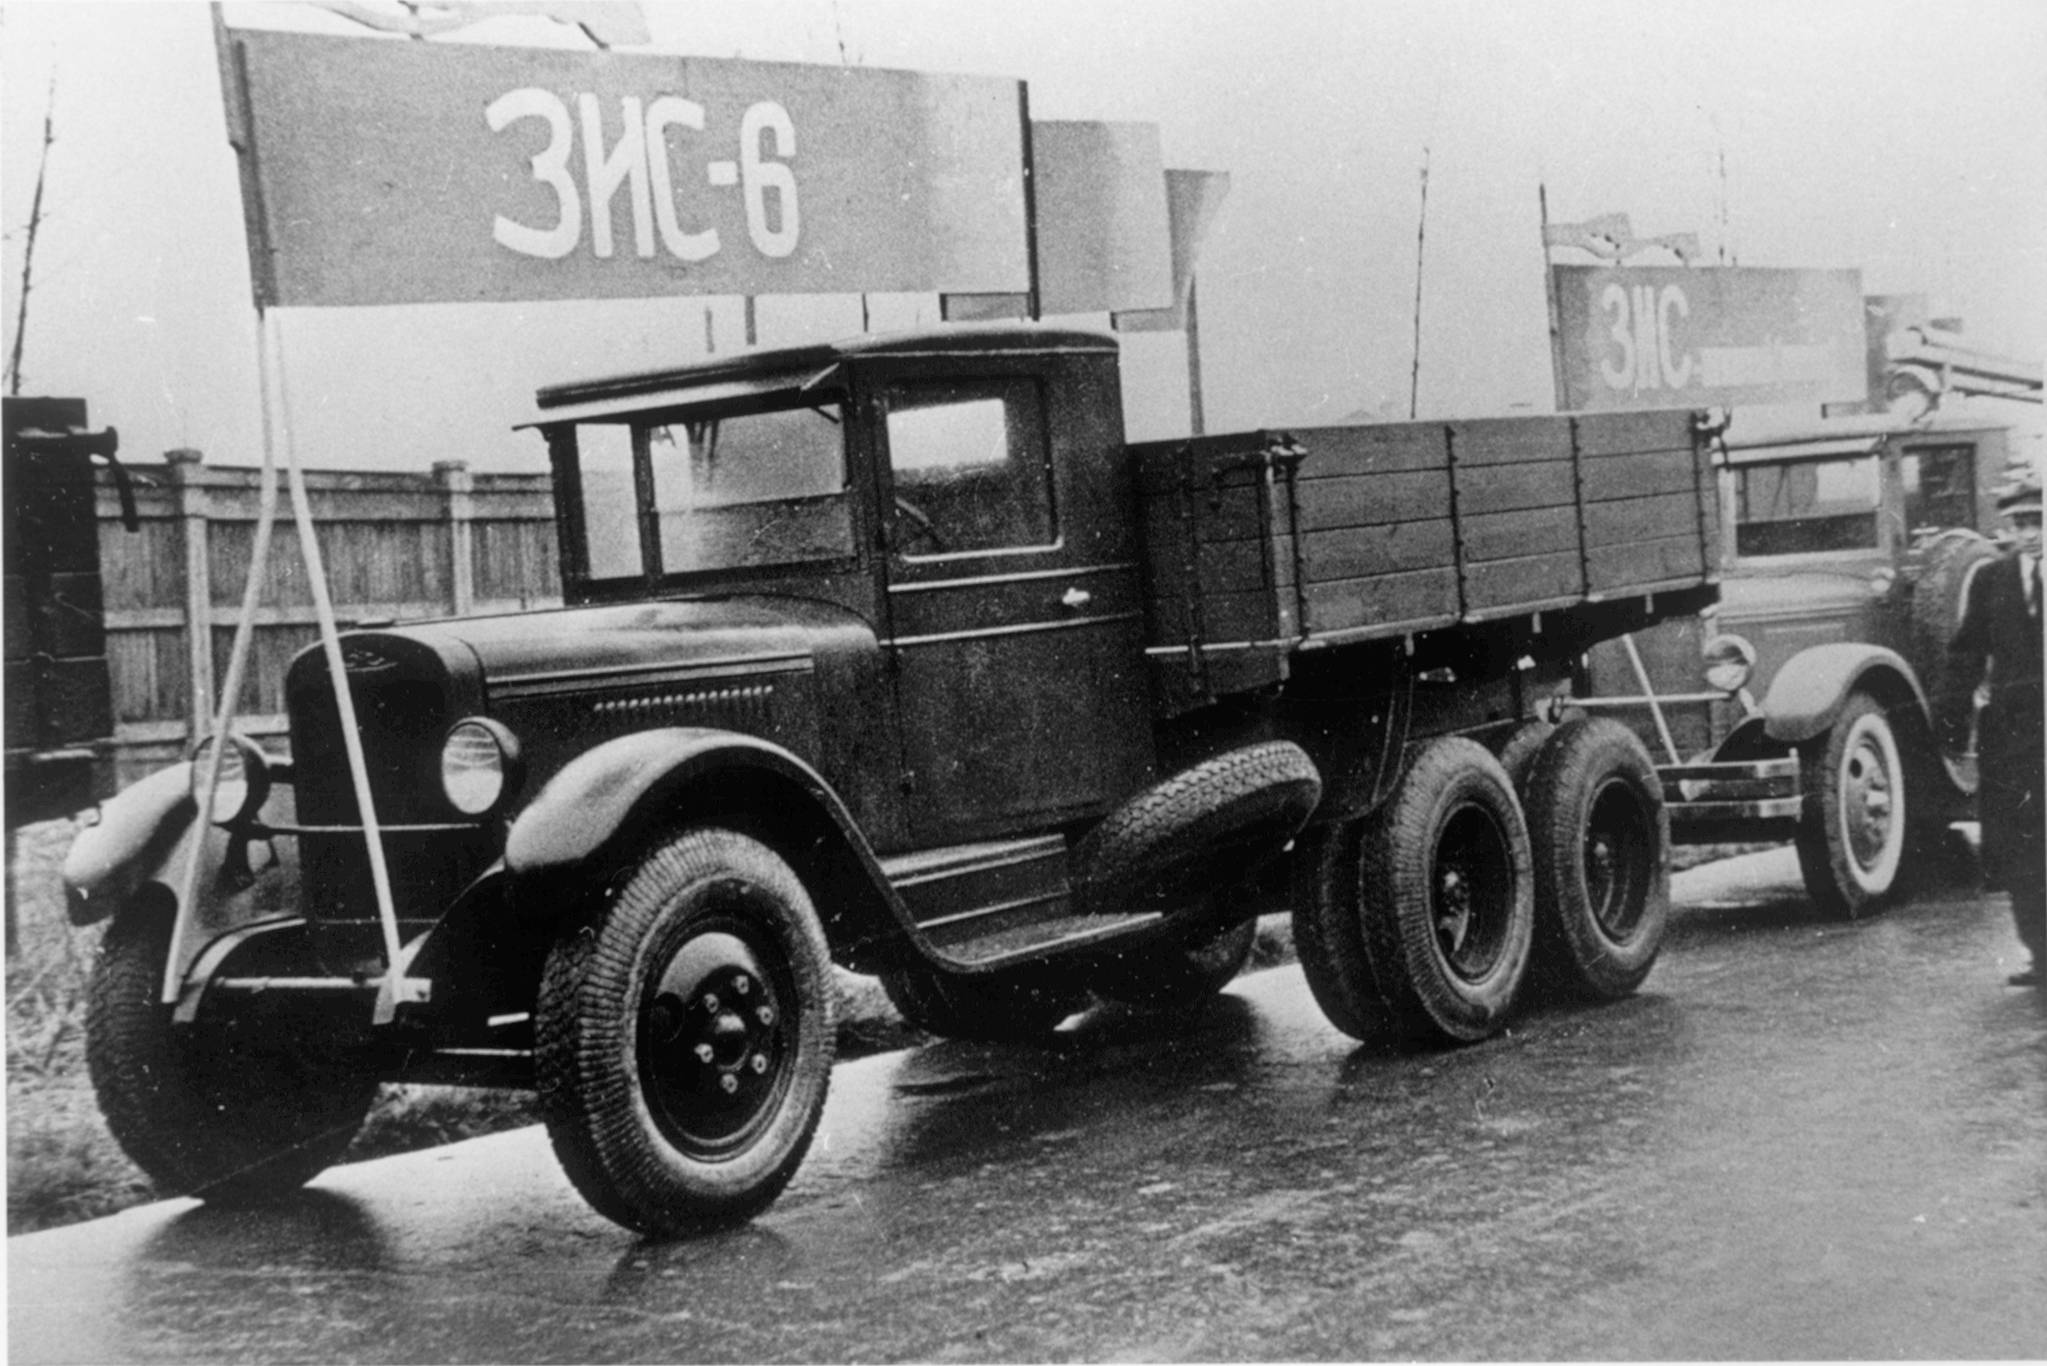 Грузовик ЗИС-6 выпускался с 1933 по 1941 год